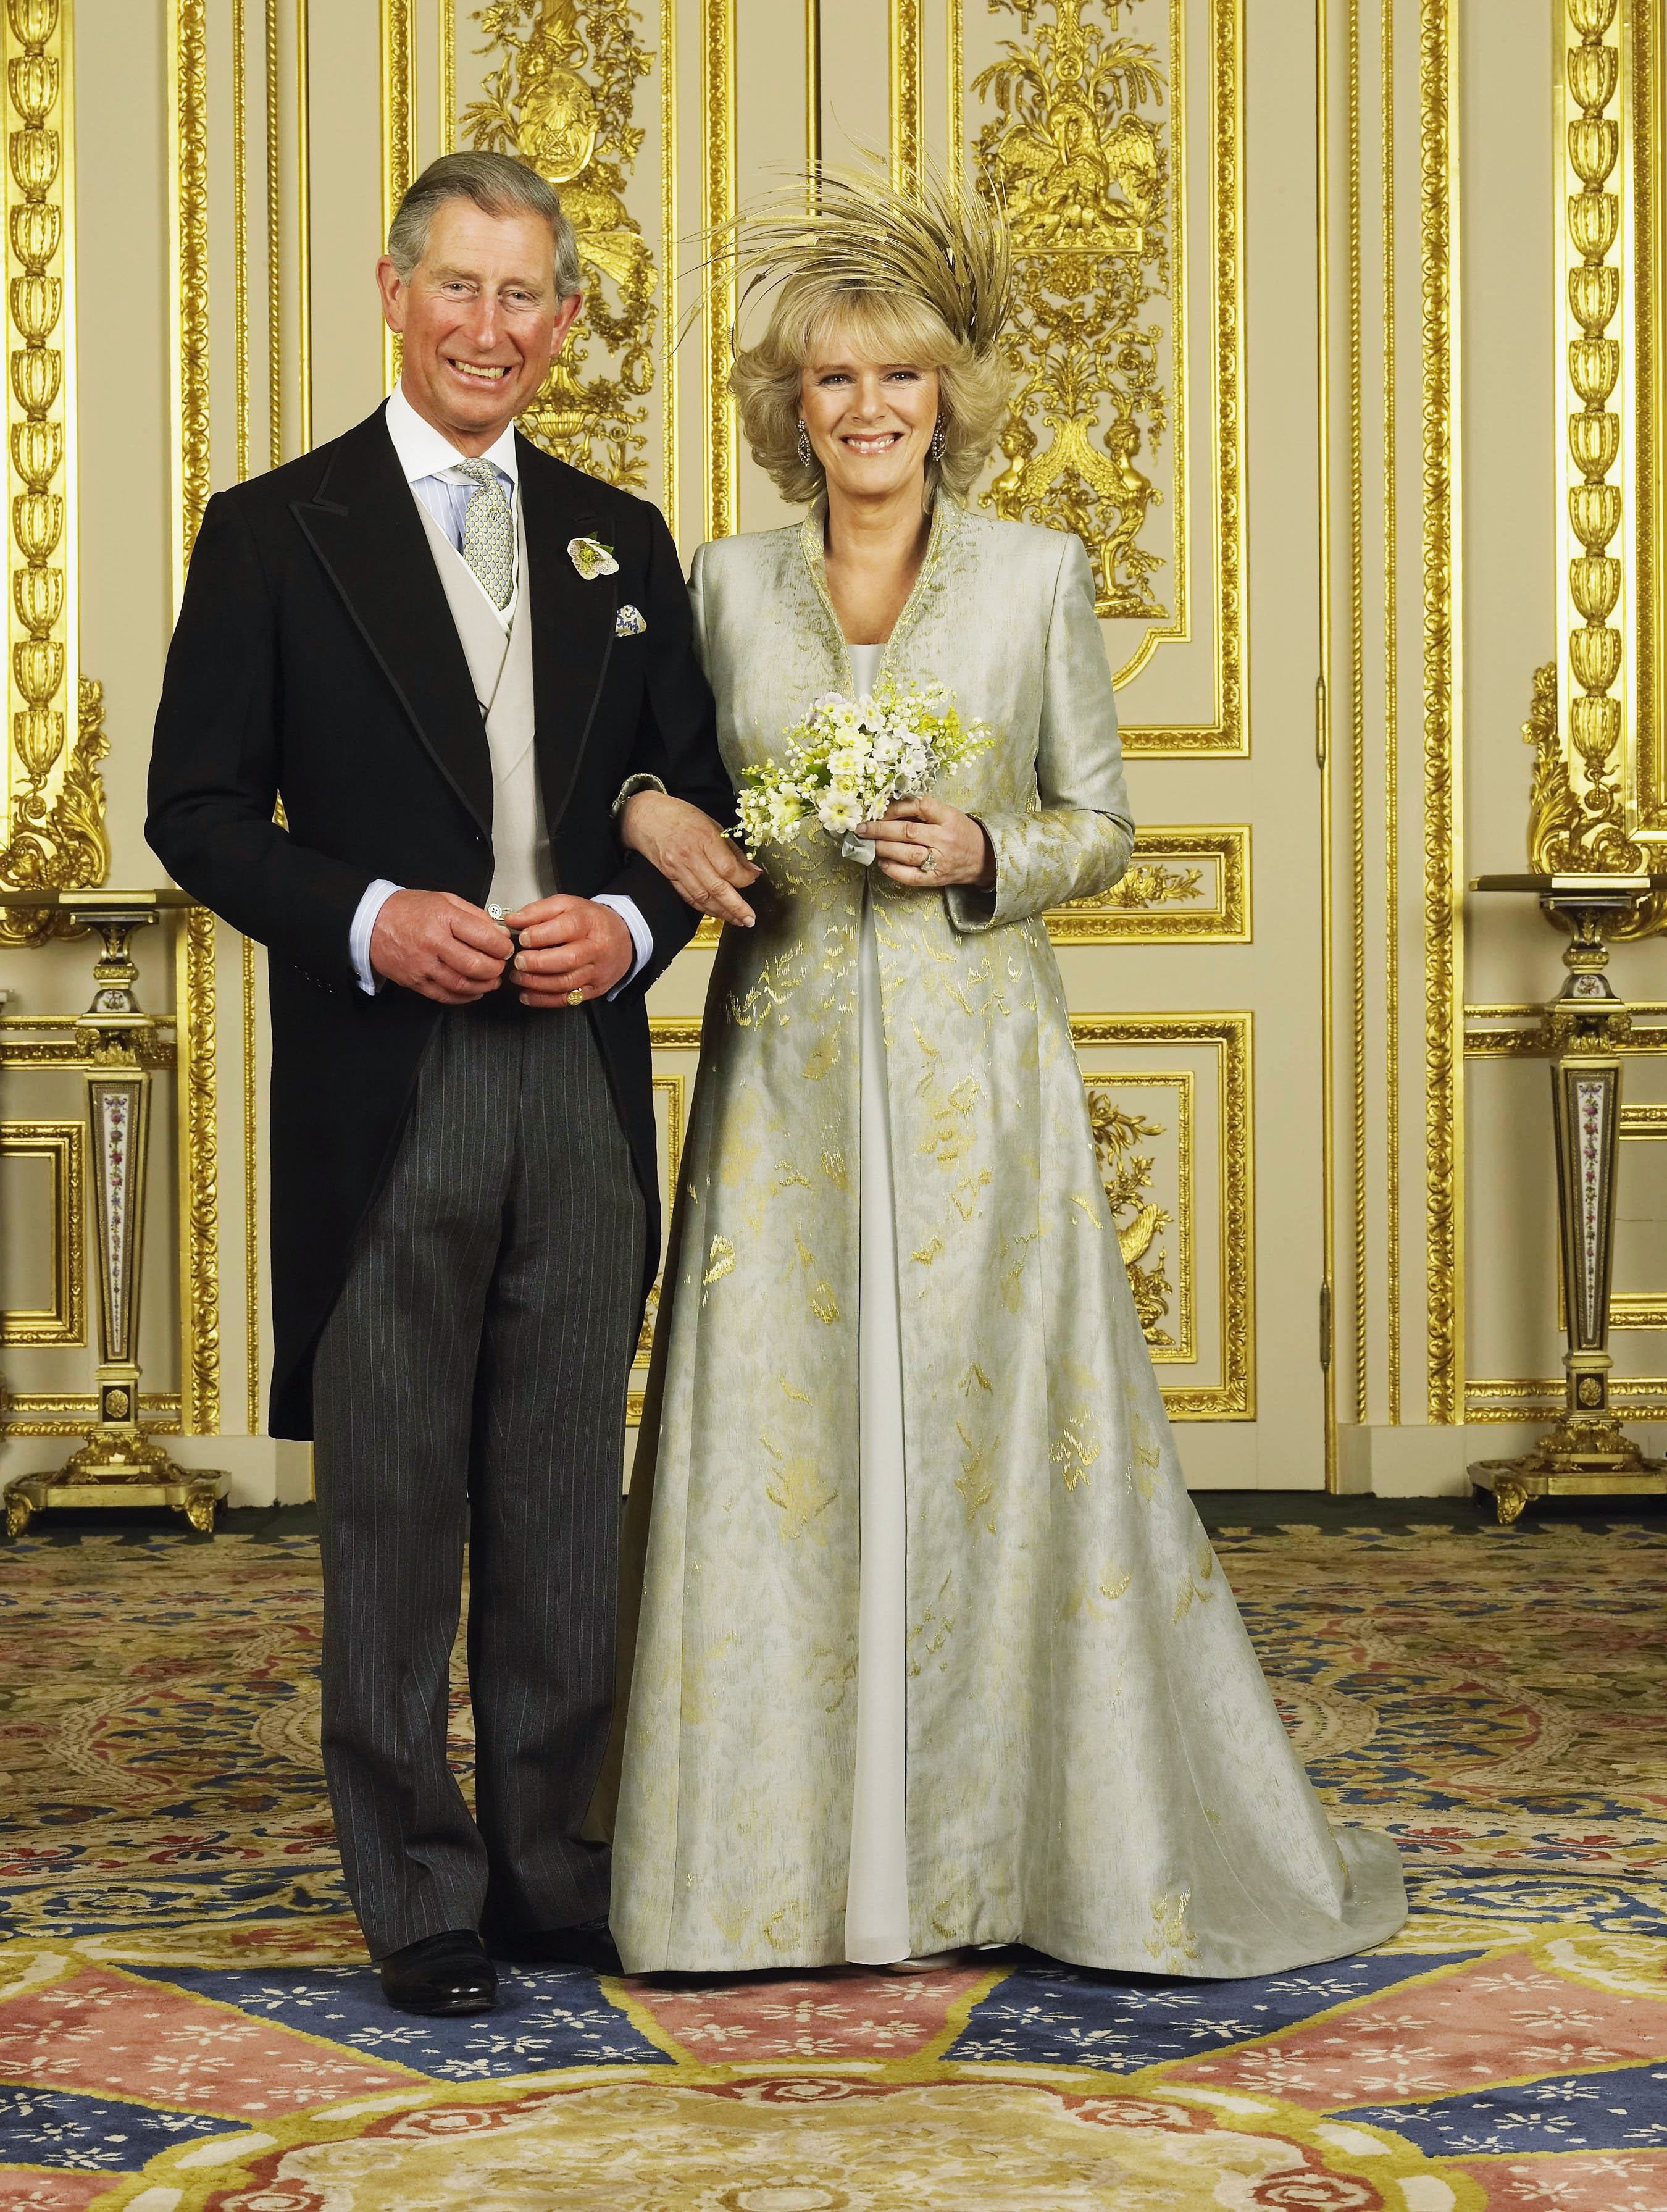 Frischvermählte König Charles und Königin Consort Camilla, Herzogin von Cornwall im Weißen Salon auf Schloss Windsor am 9. April 2005 in Windsor, England. | Quelle: Getty Images